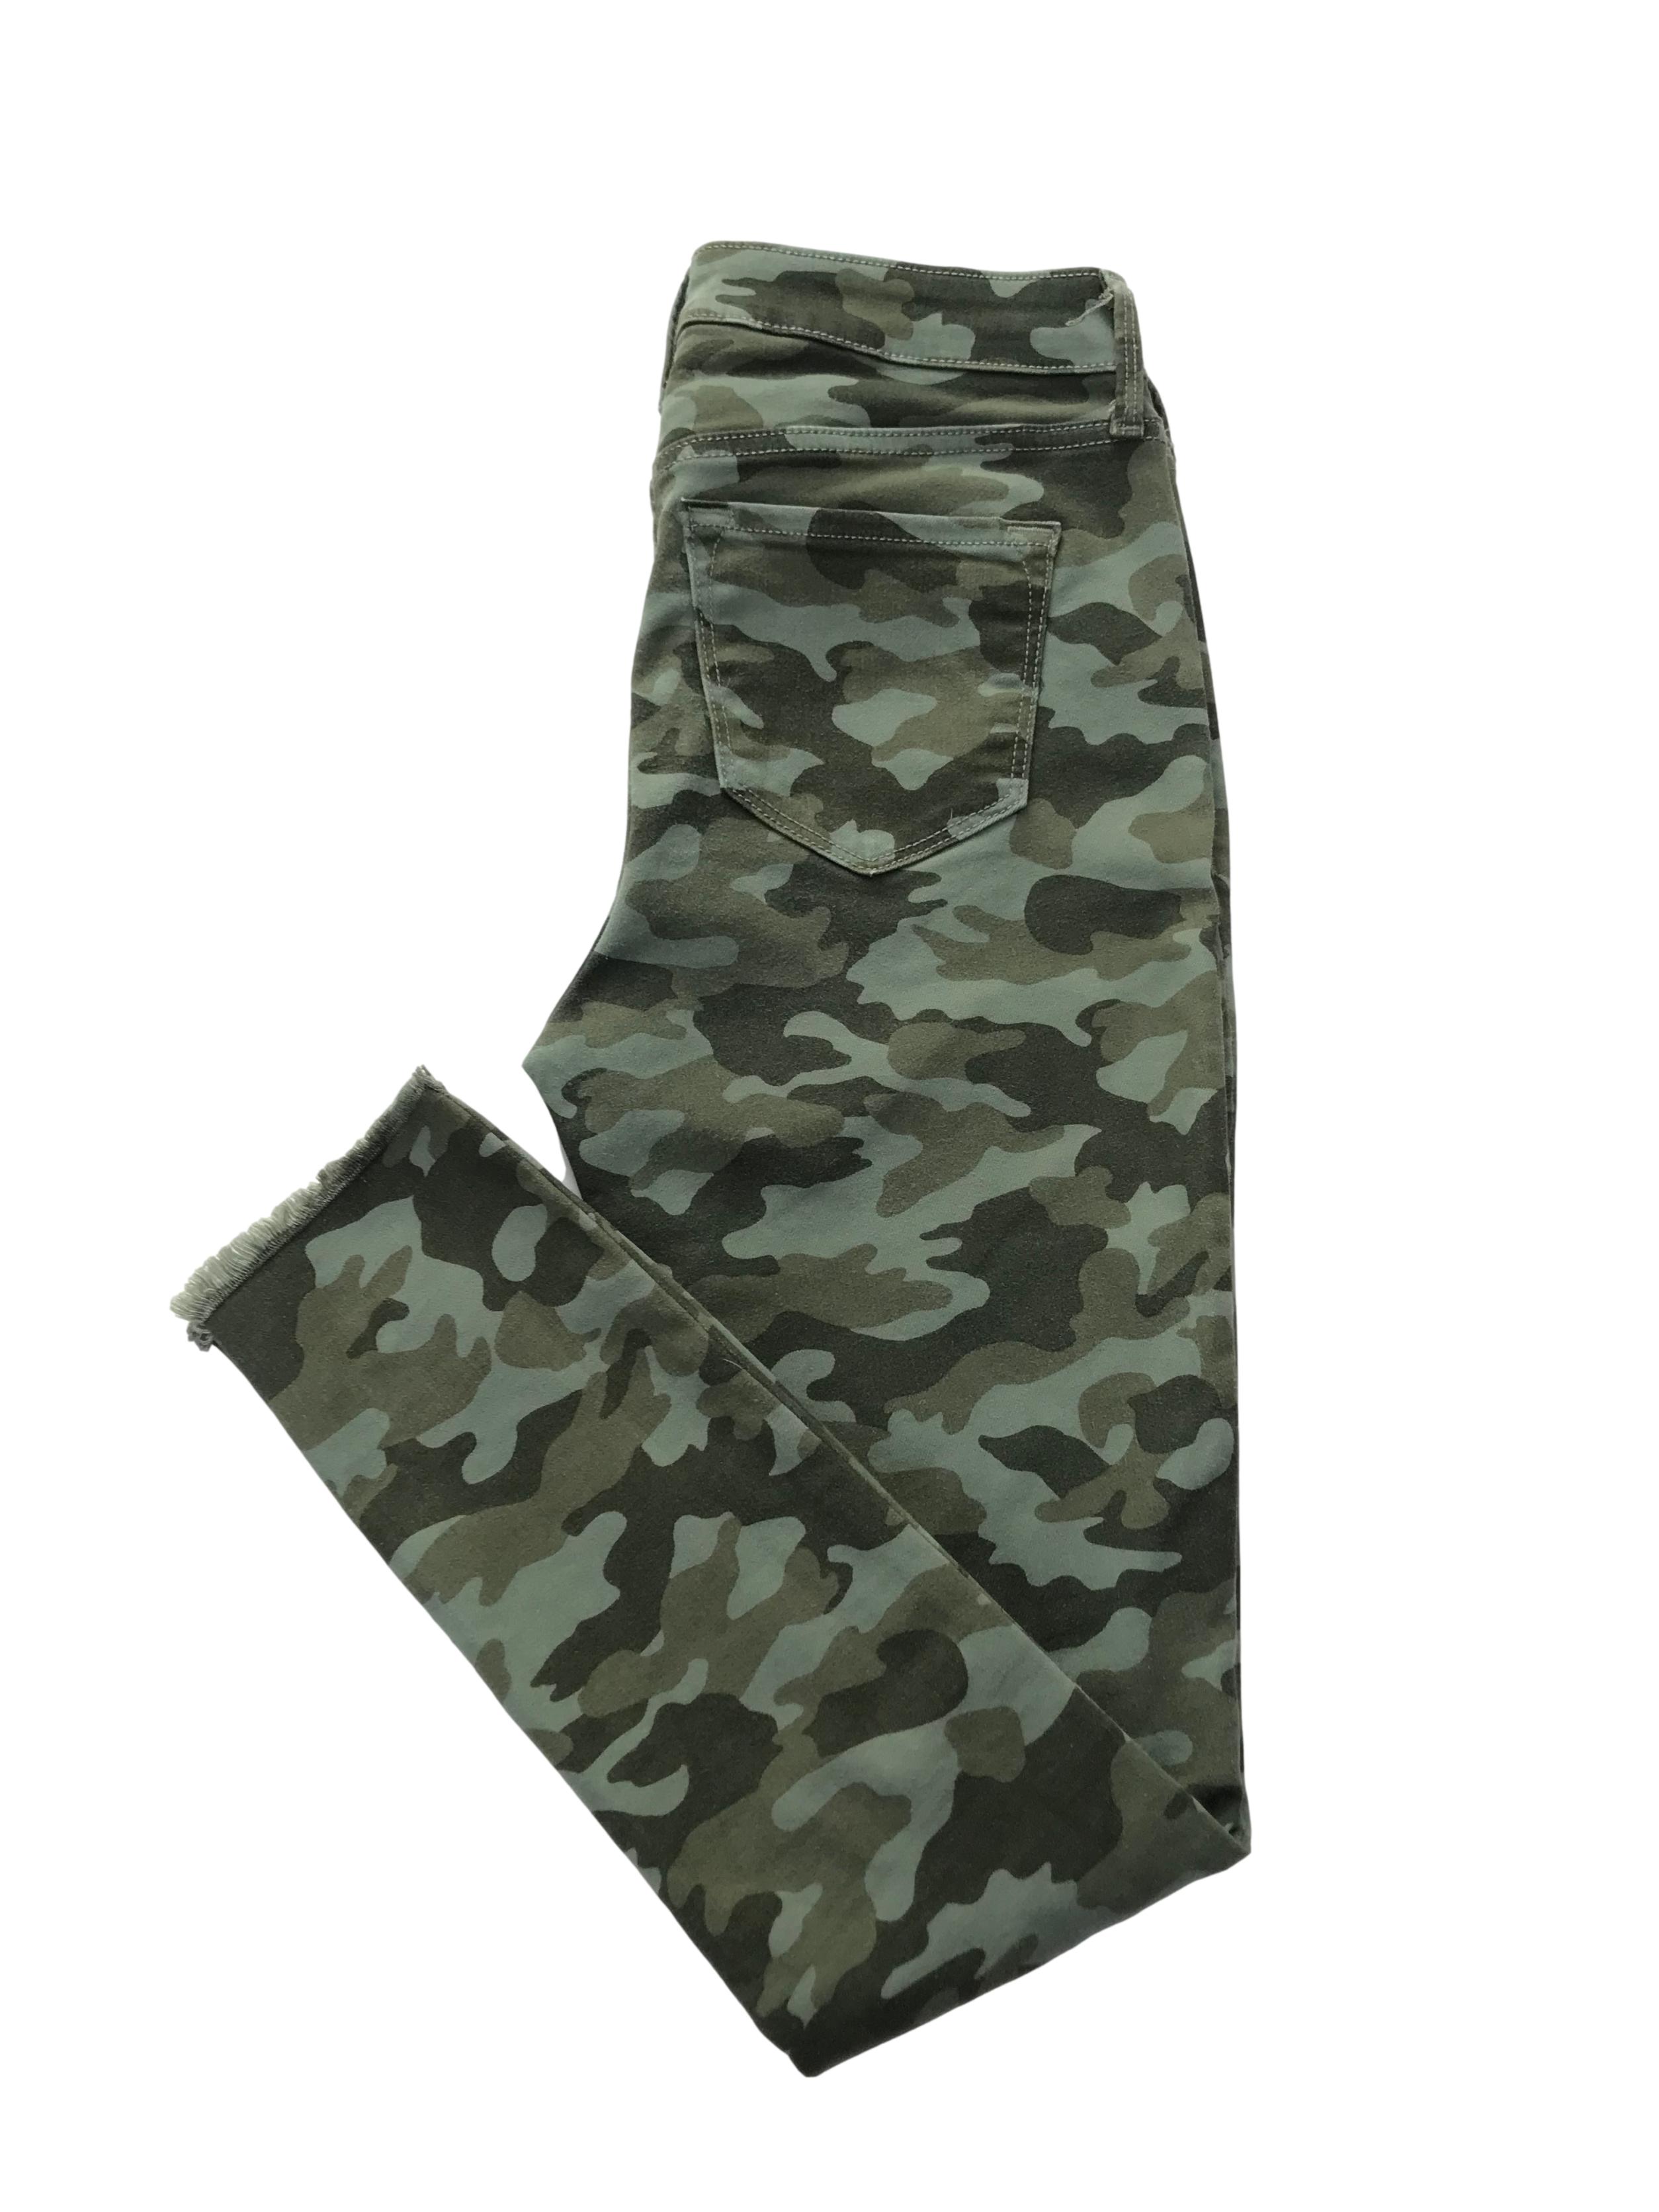 Pantalón Old Navy drill stretch camuflado, five pockets y detalles desflecado. Cintura 70cm  Largo 94cm . Precio original S/ 149